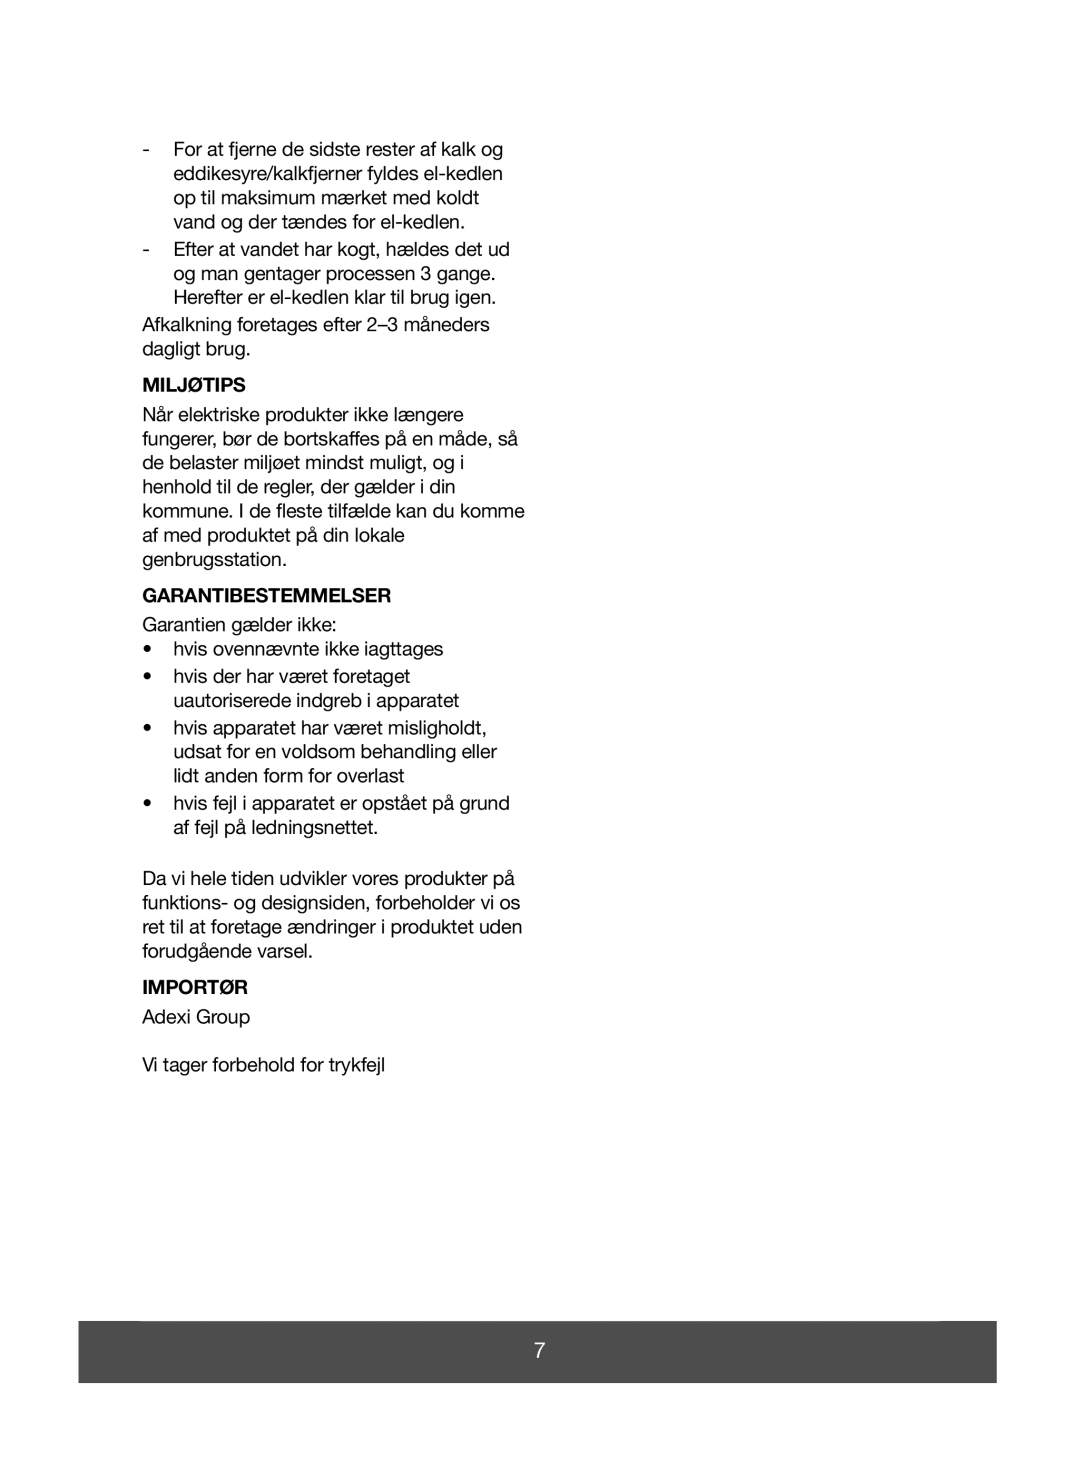 Melissa 645-078 manual Miljøtips, Garantibestemmelser, Importør 